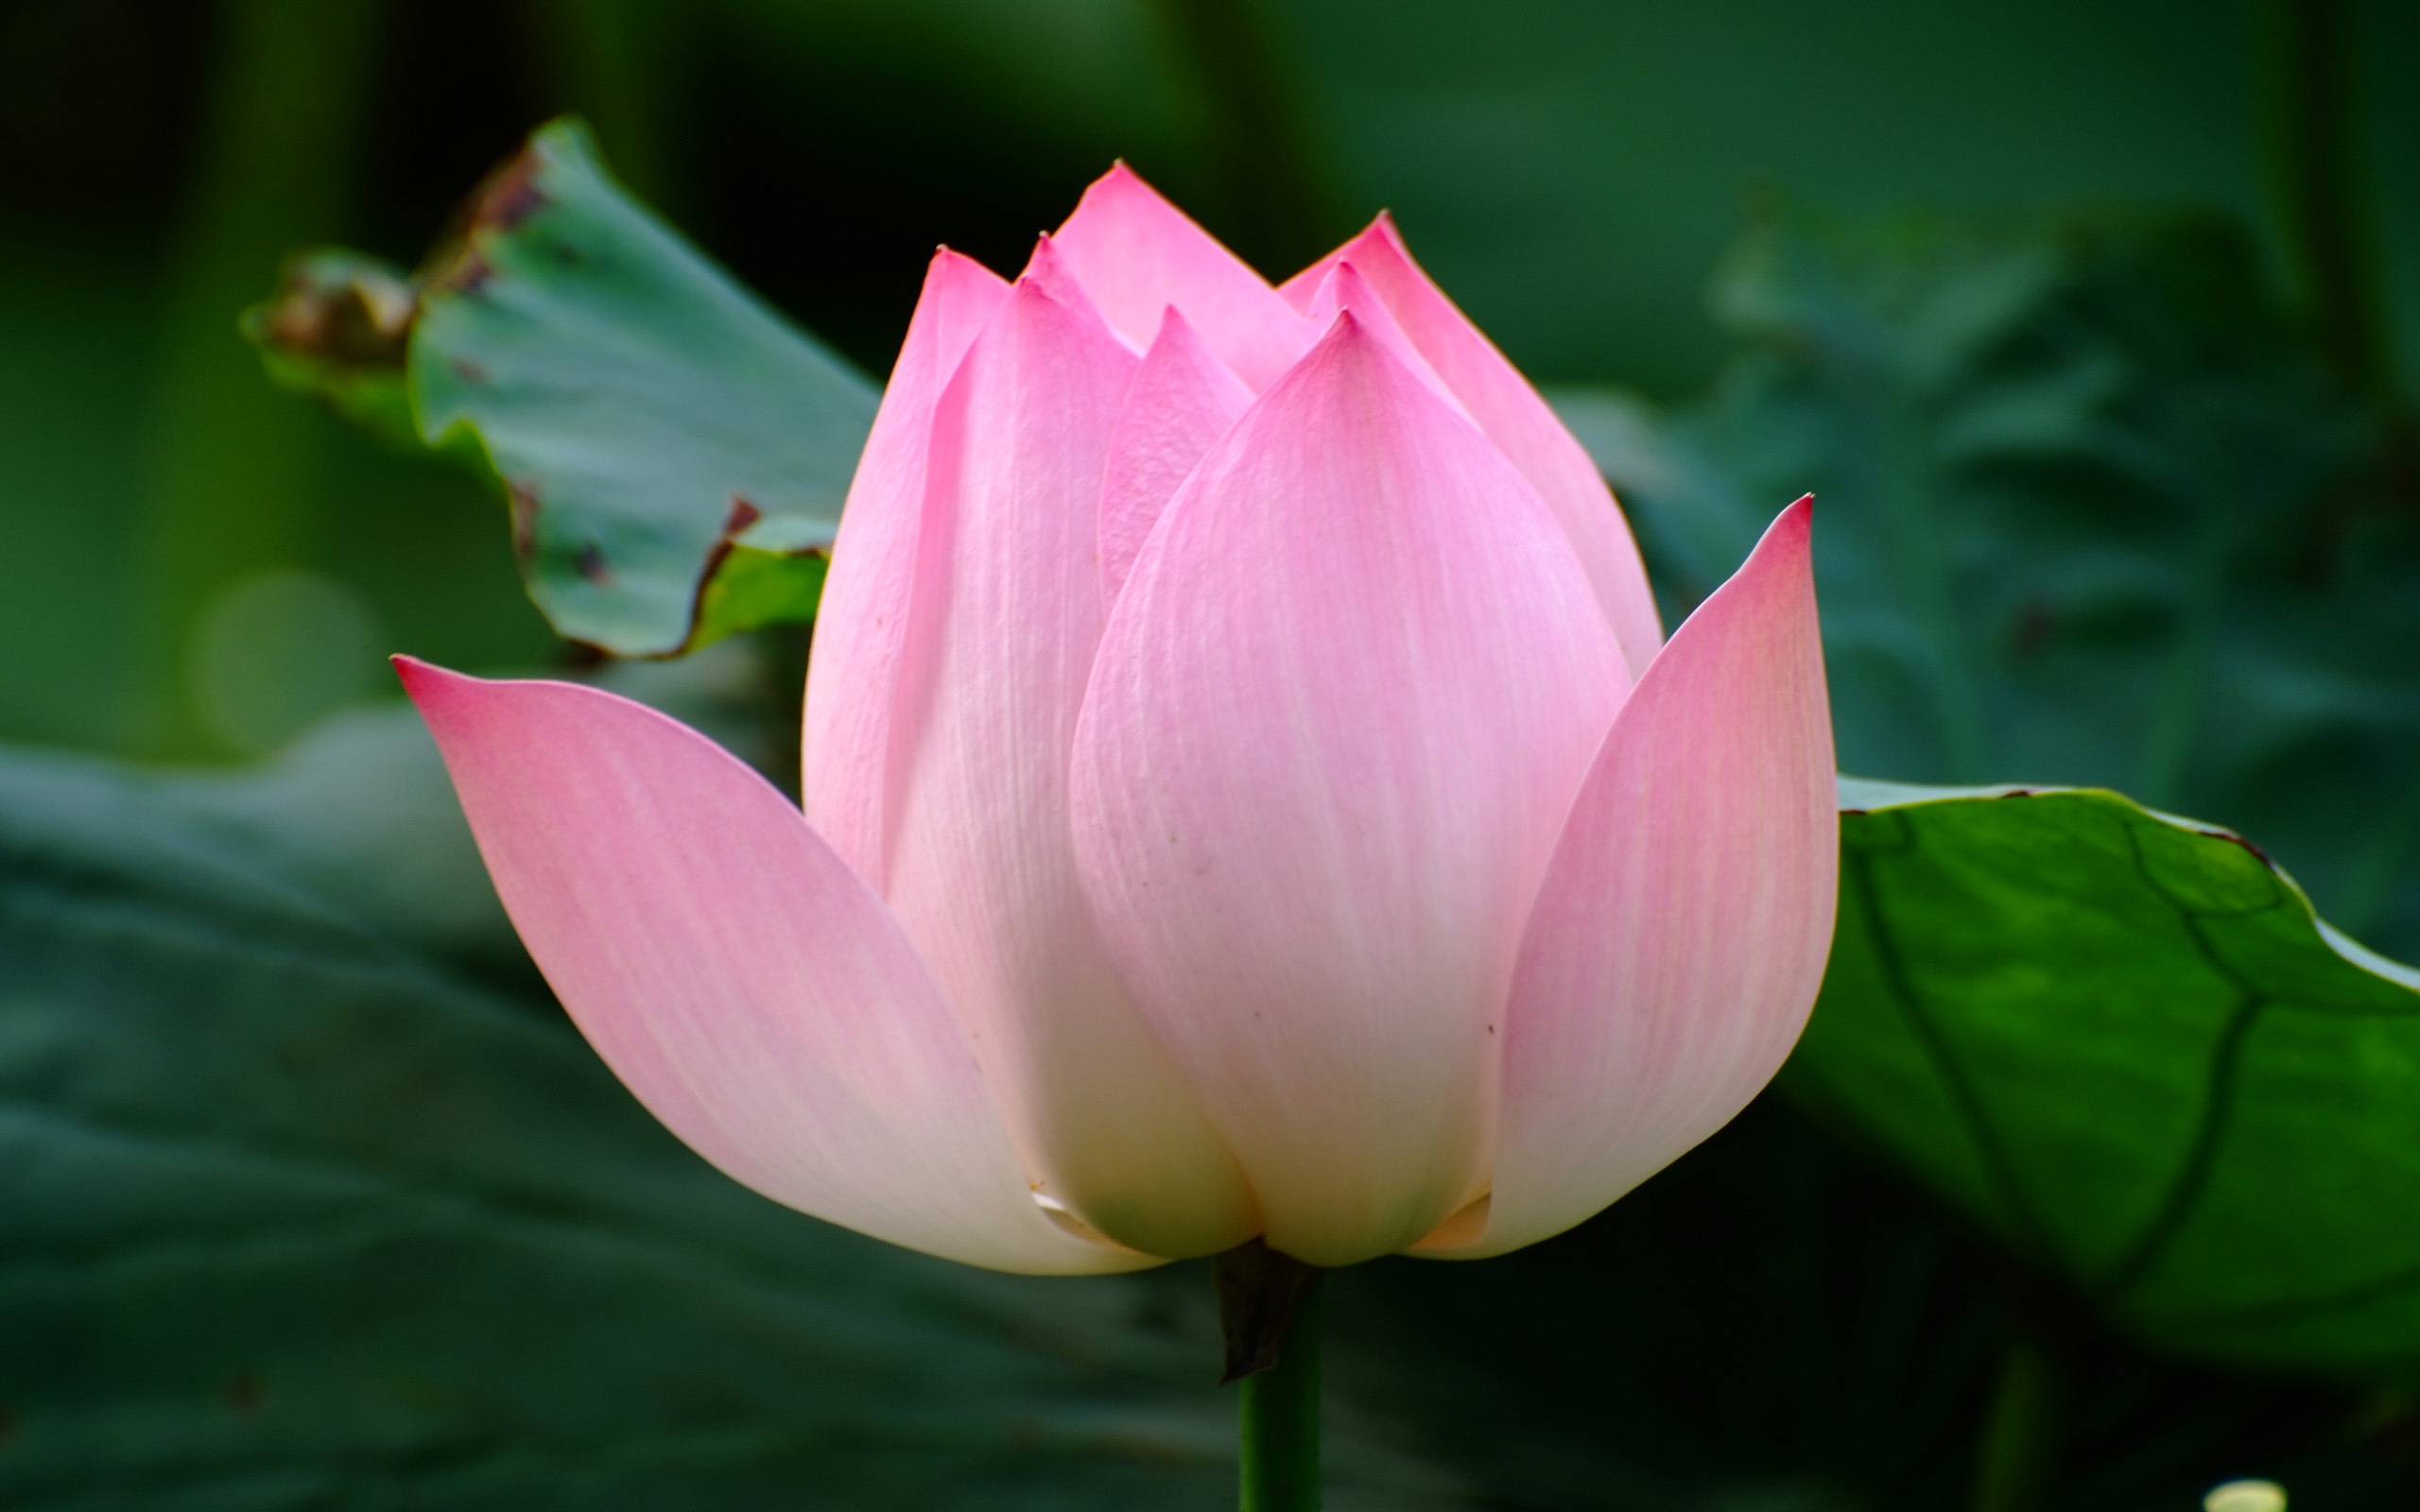 Rose Garden of the Lotus (rebar works) #6 - 2560x1600